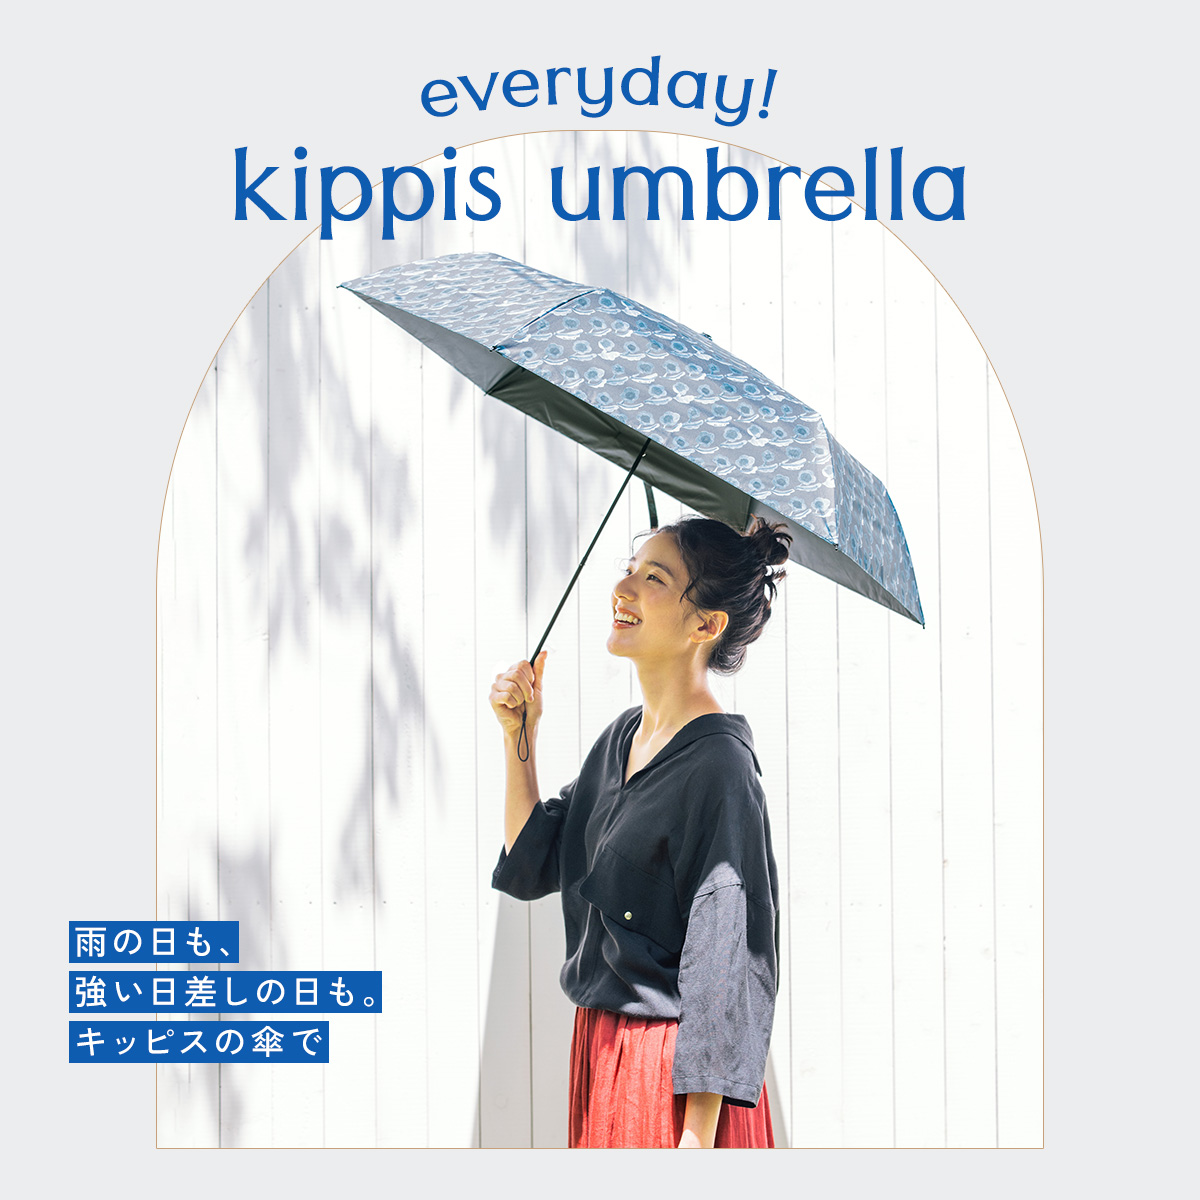 【特集バナー1】everyday! kippis umbrella